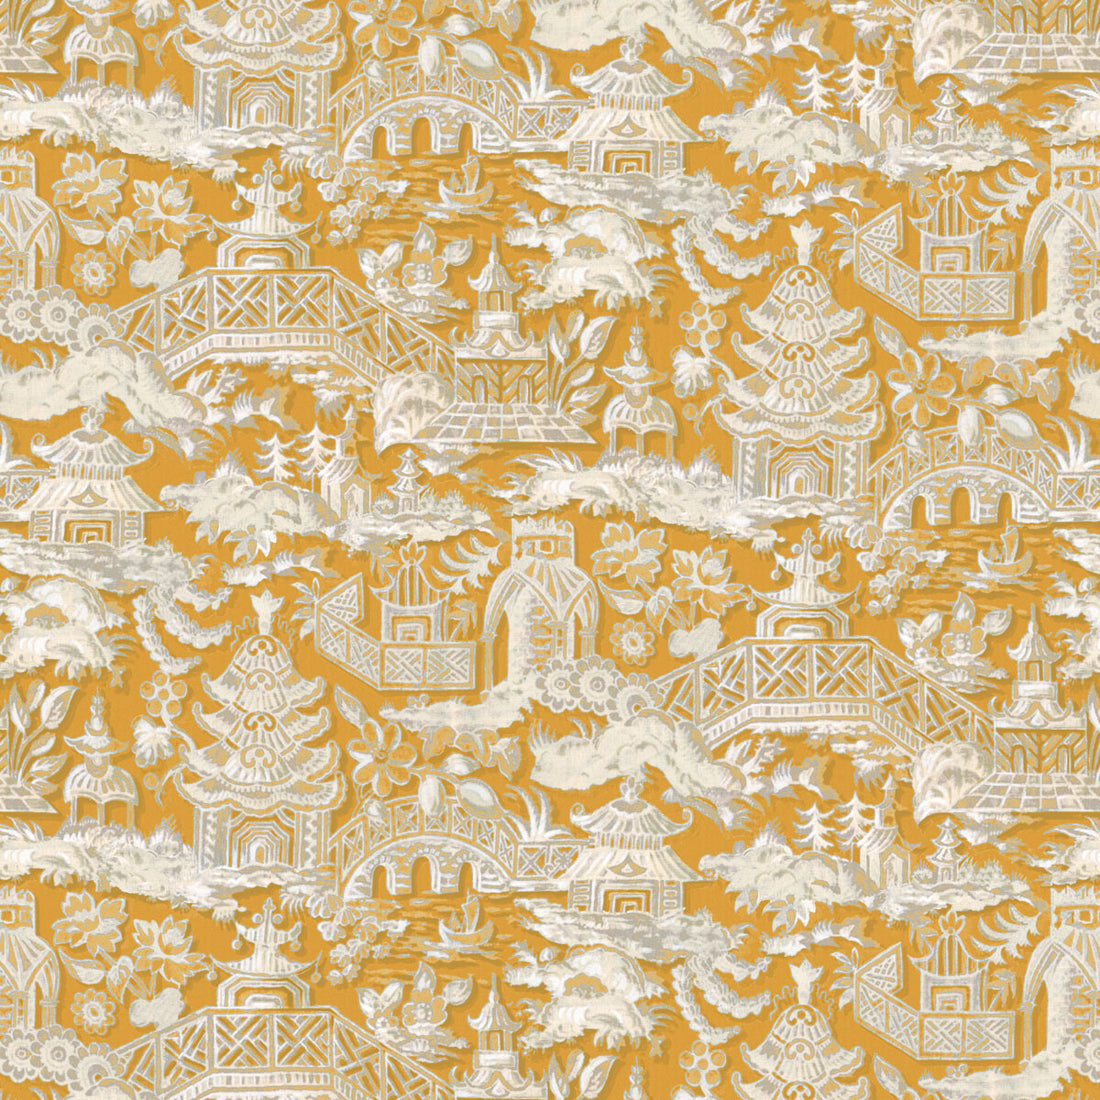 Marta fabric in ocre color - pattern LCT1048.001.0 - by Gaston y Daniela in the Lorenzo Castillo VI collection